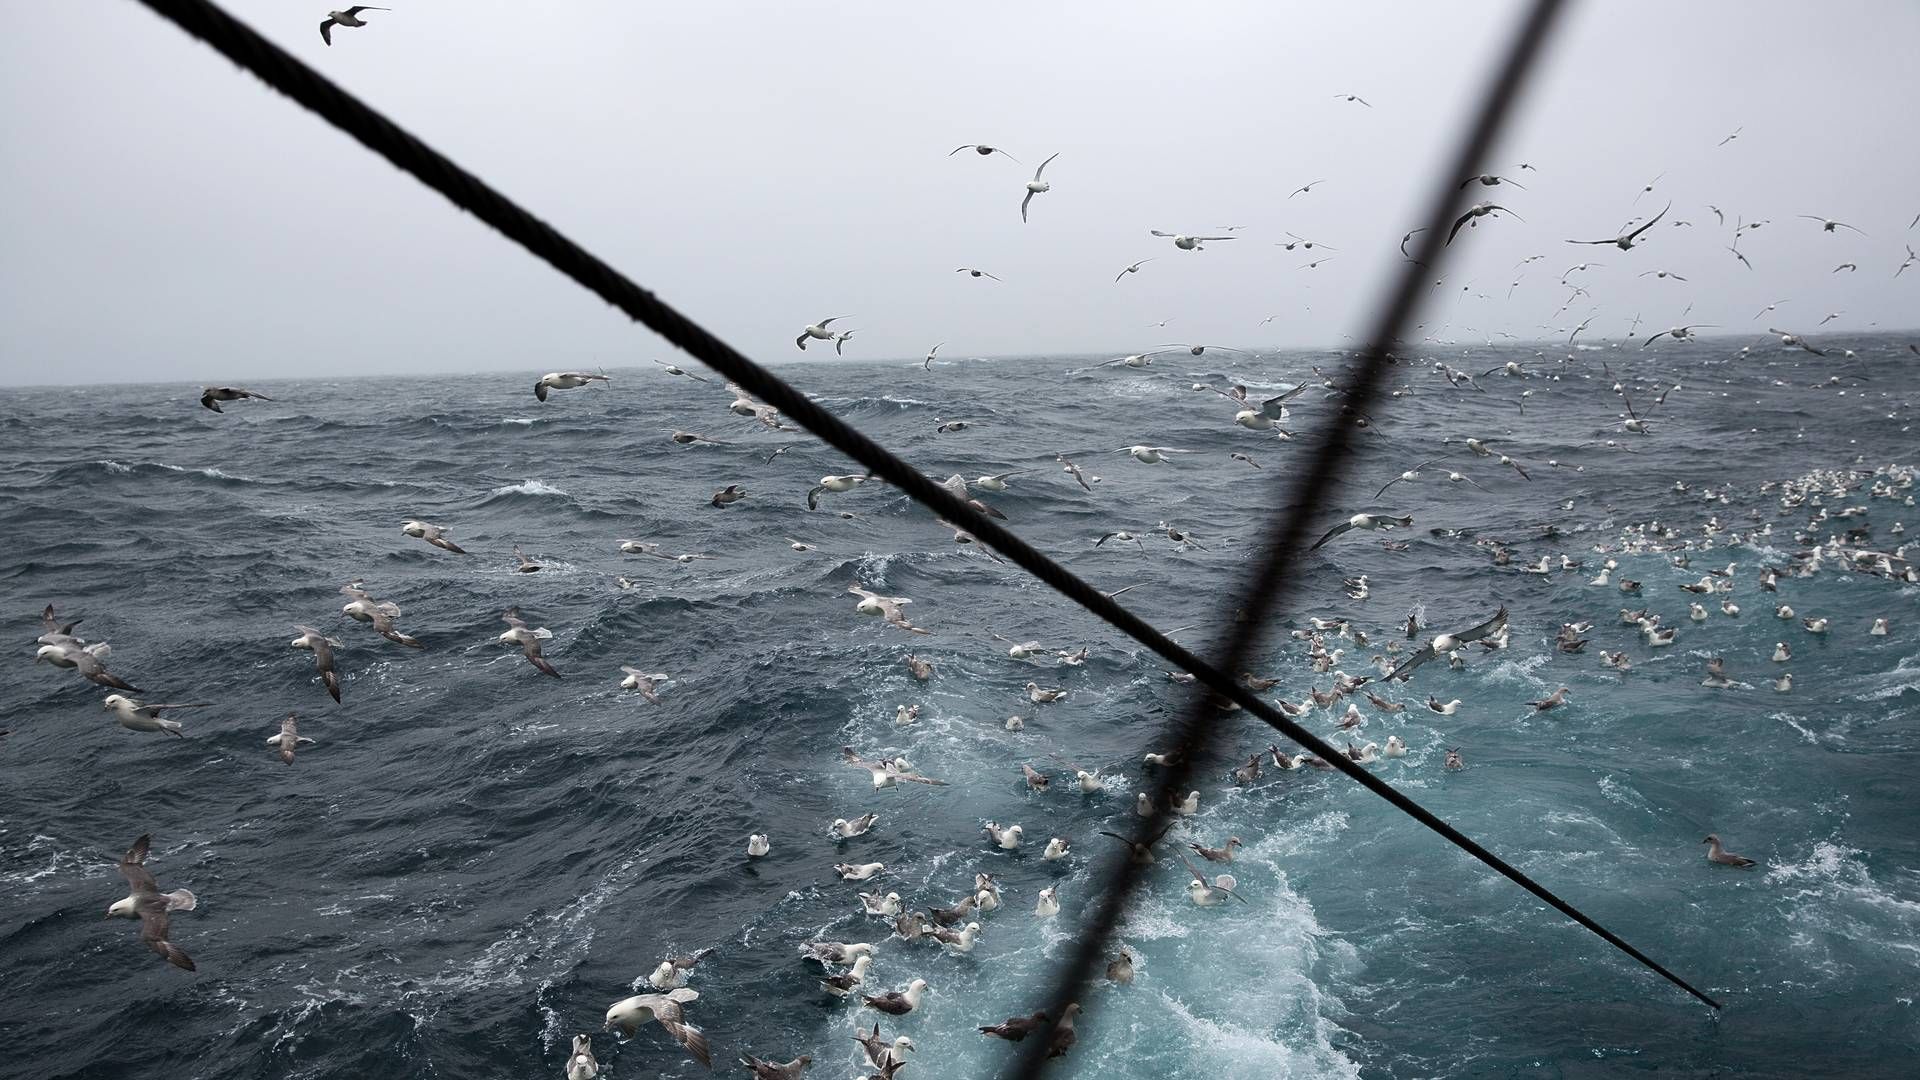 Hårdt russisk fiskeri i Østersøen "underminerer" mulighederne for at genopbygge de pressede bestande, advarer flere EU-lande. De kræver handling. i(ARKIV / ILLUSTRATION) | Foto: Per Folkver